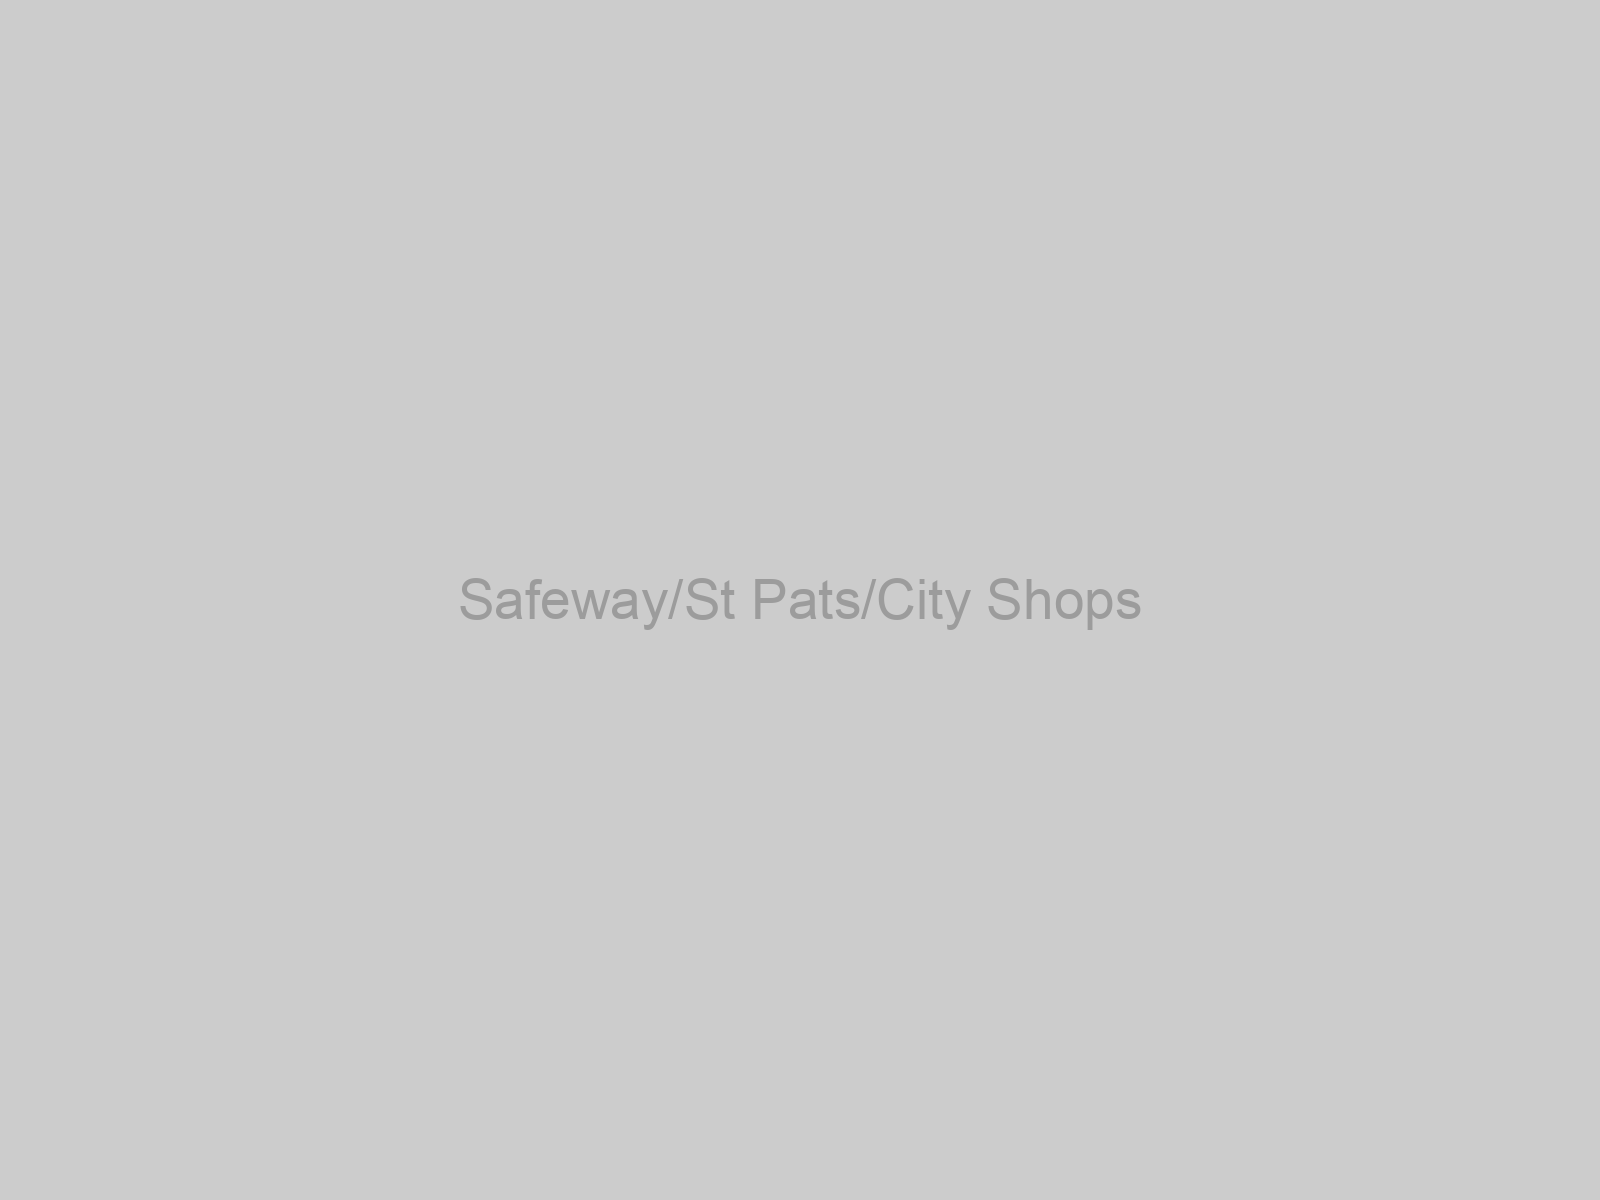 Safeway/St Pats/City Shops